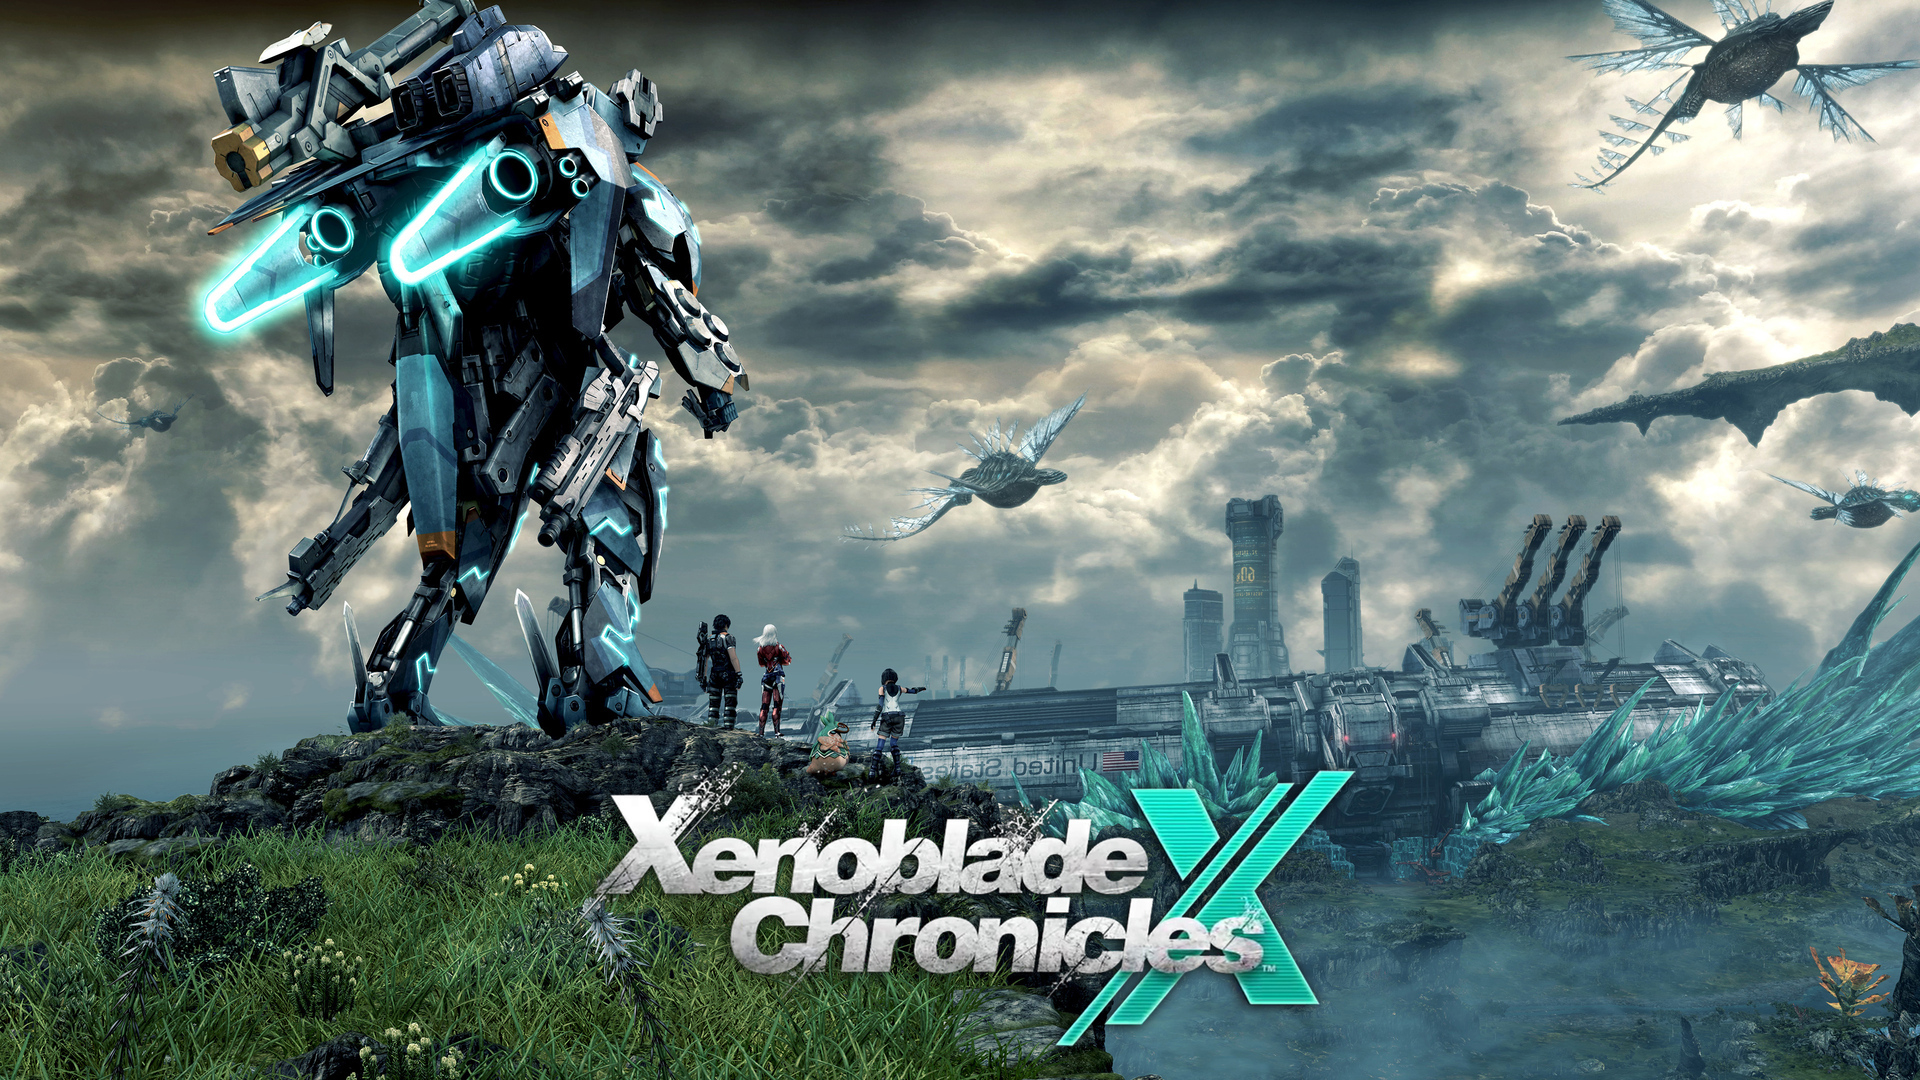 Xenoblade Chronicles Xenoblade Chronicles X Anime Games Wii U Video Game Art Mechs Clouds Sky Video  1920x1080